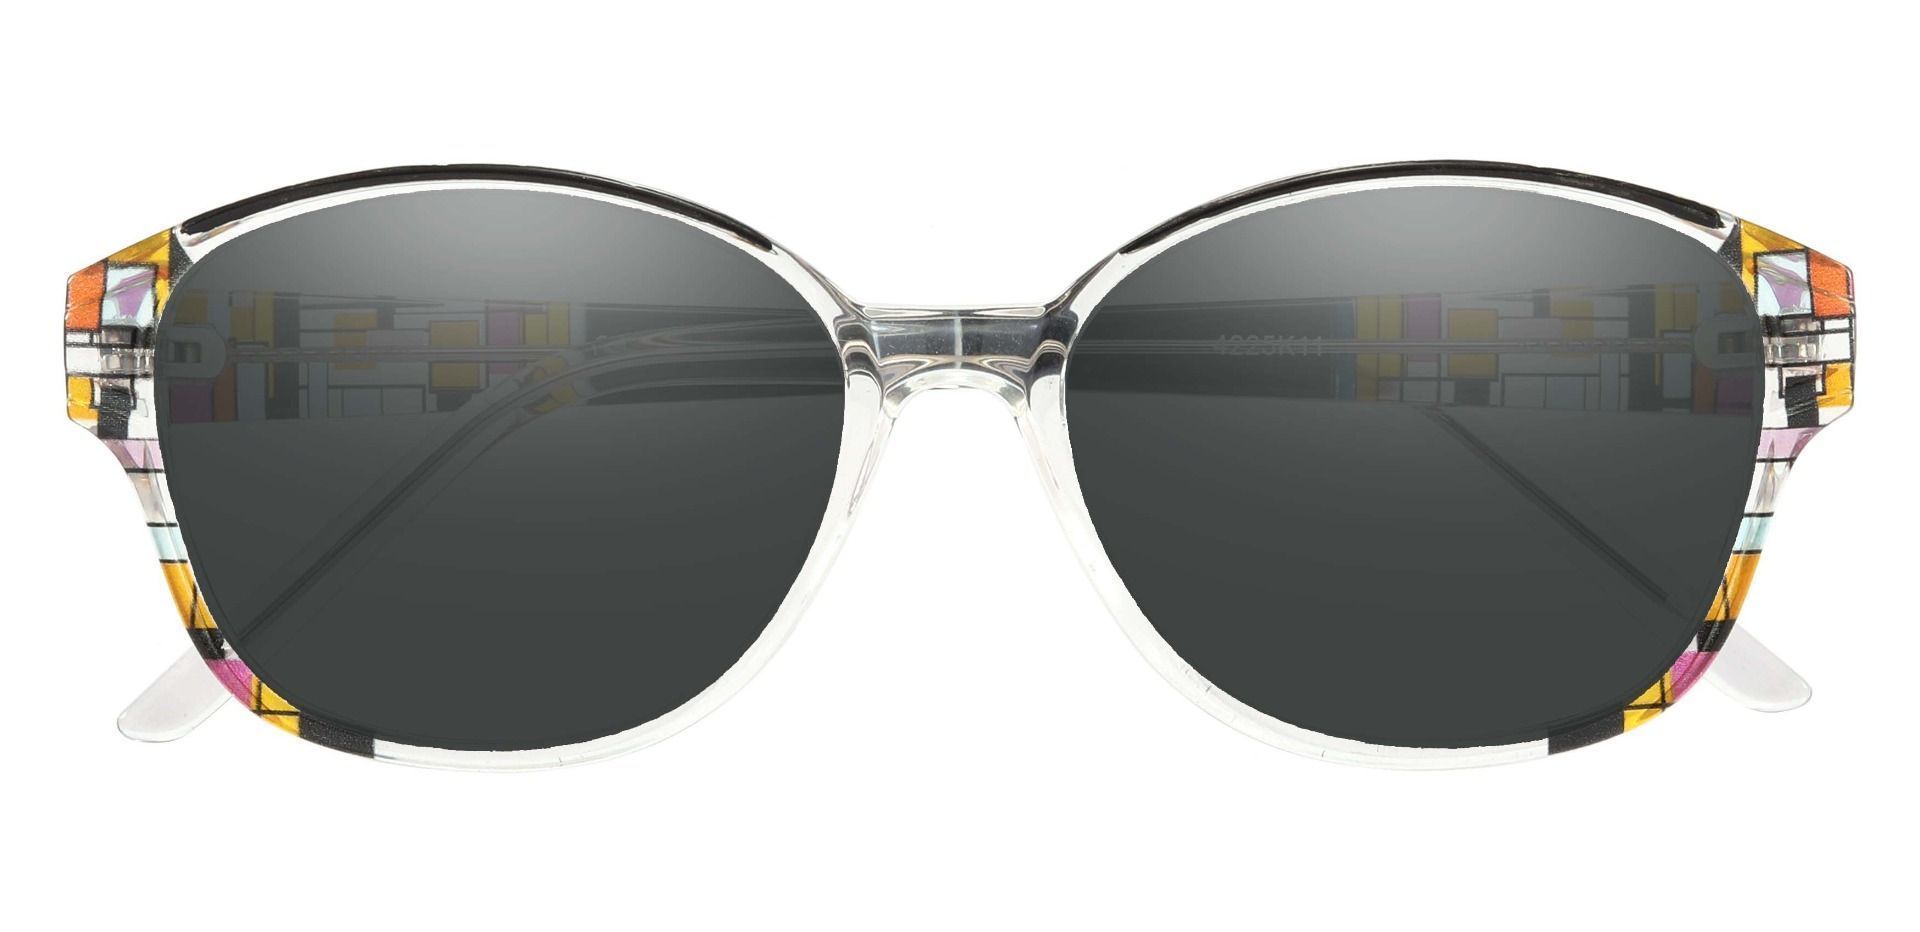 Moira Oval Progressive Sunglasses - Black Frame With Gray Lenses